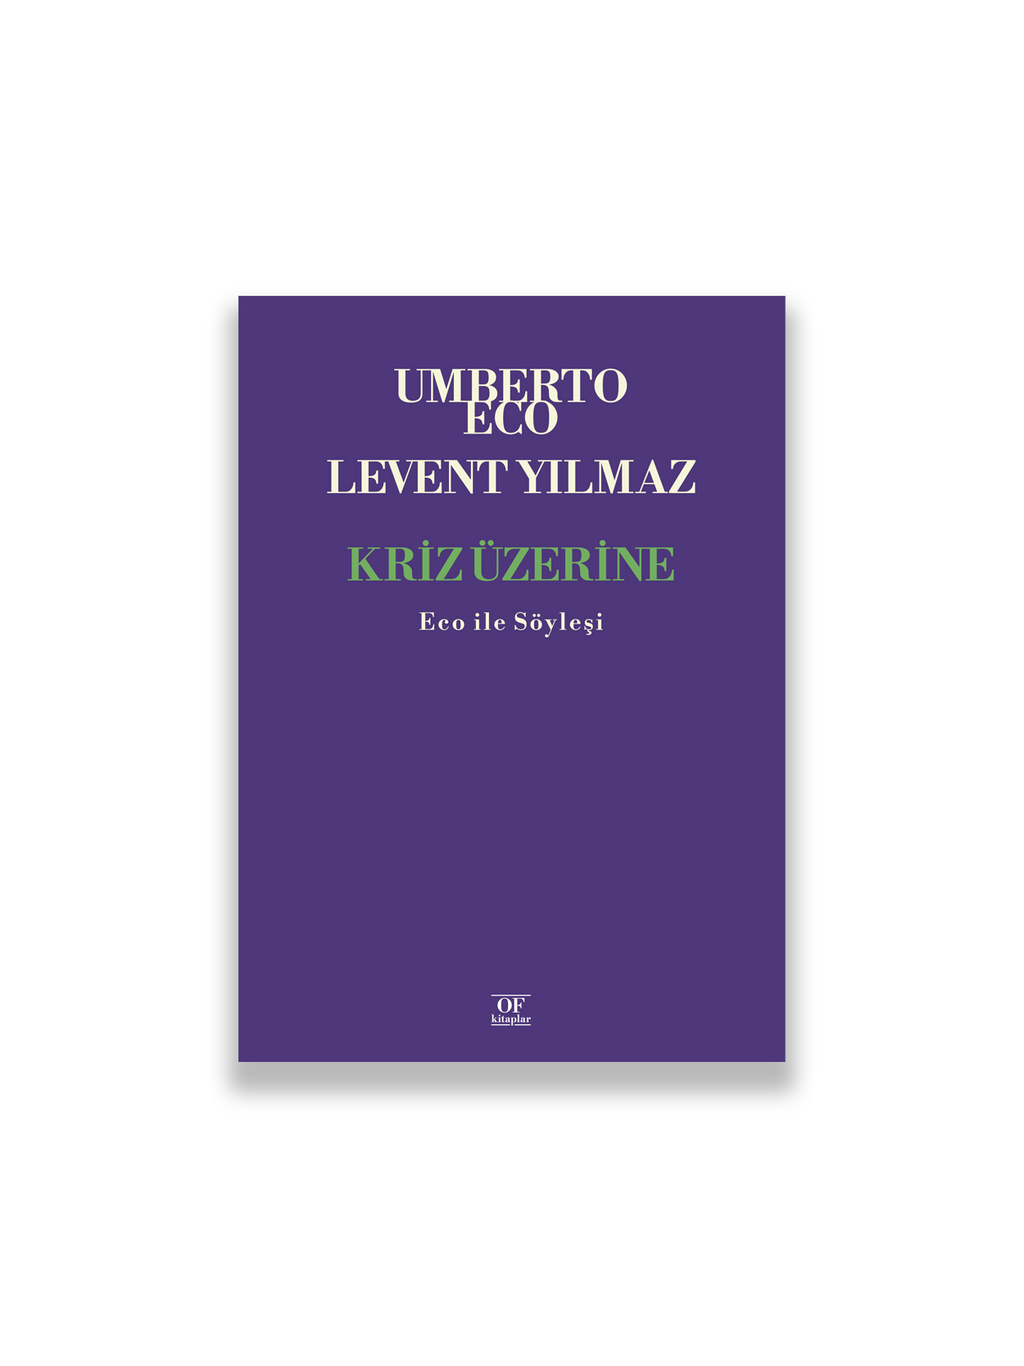 Umberto Eco, Levent Yılmaz - Kriz Üzerine: Eco ile Söyleşi